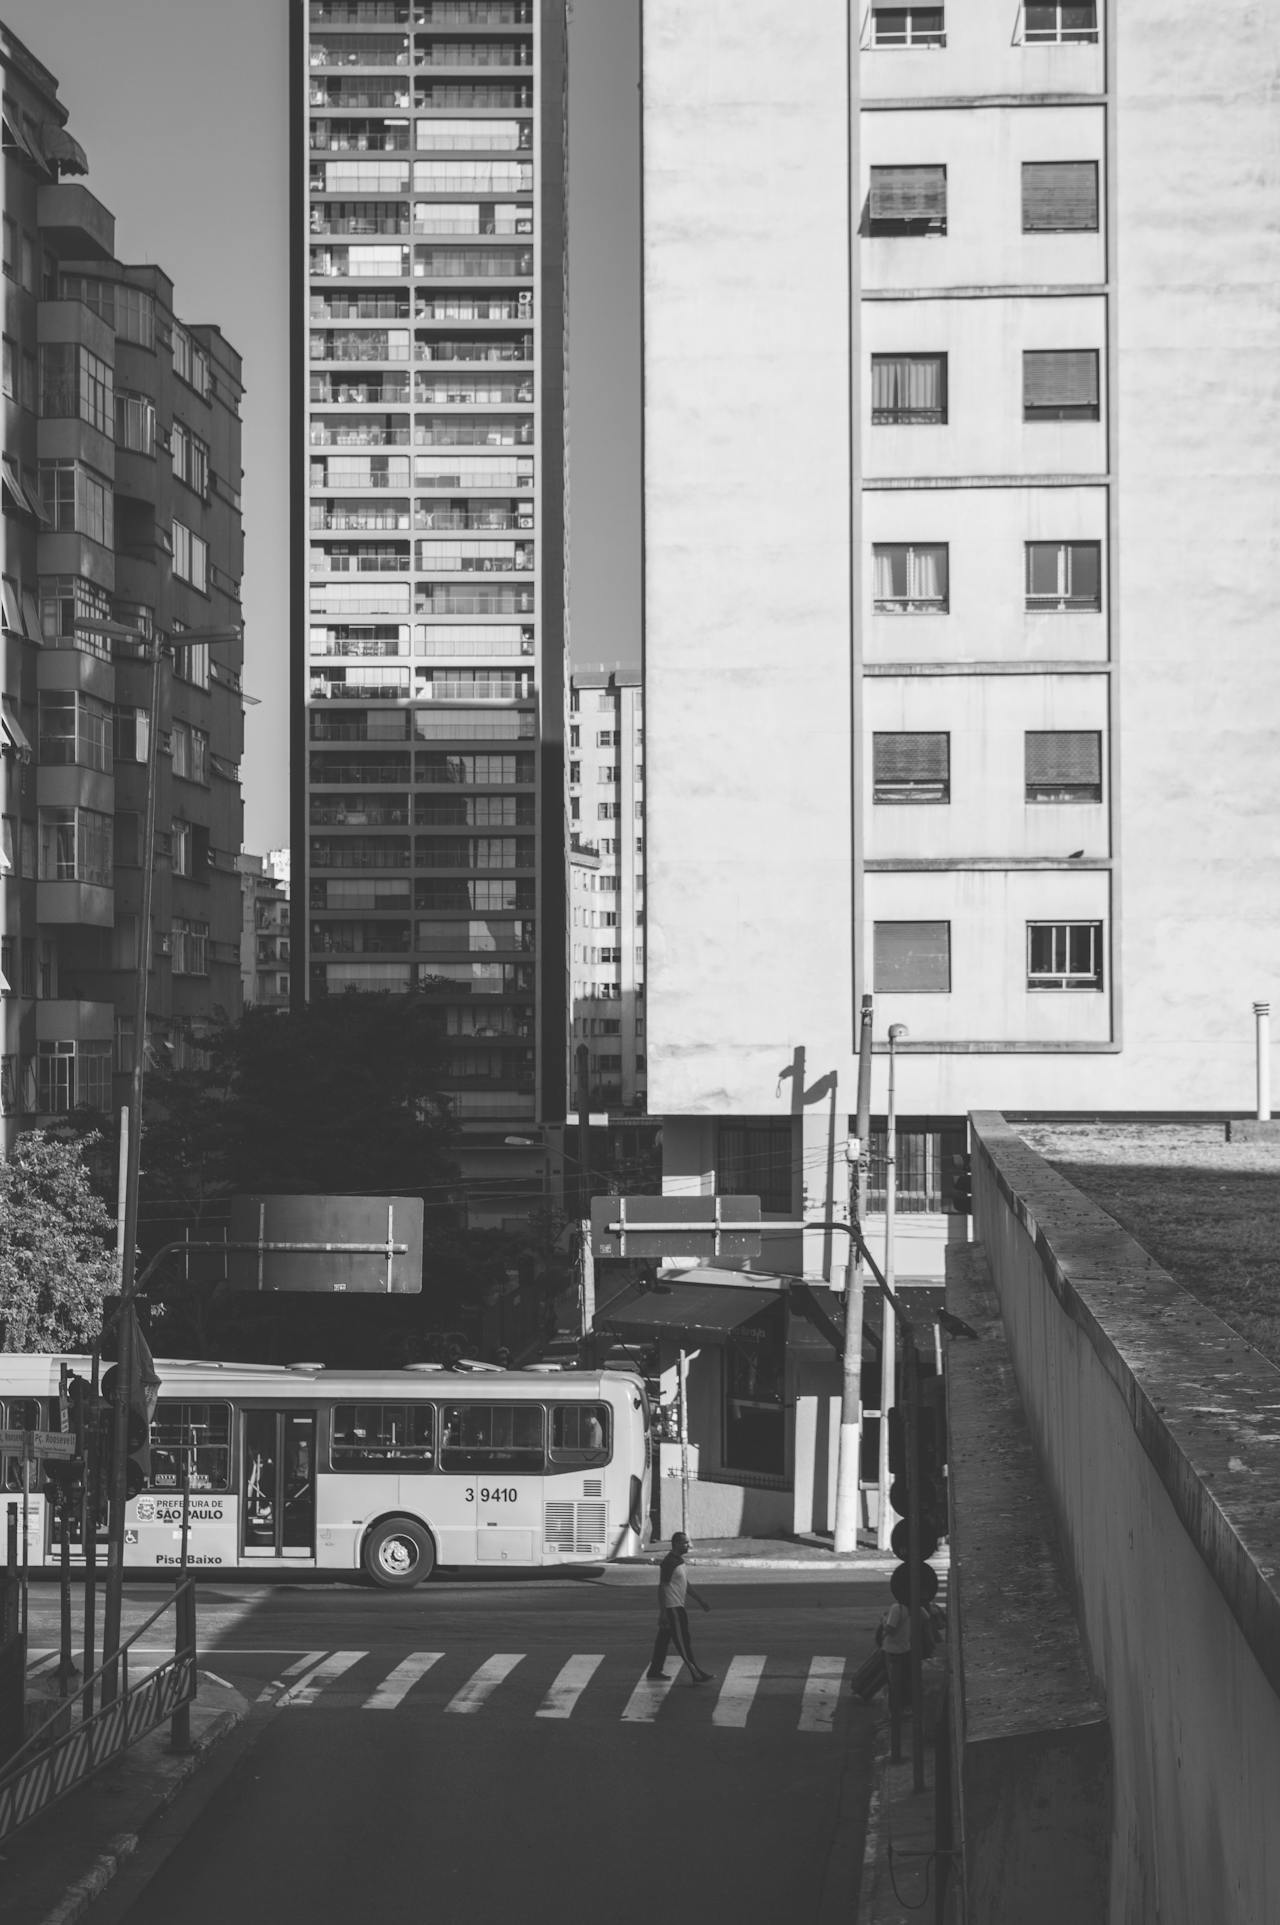 Tiete Bus Station, Sao Paulo